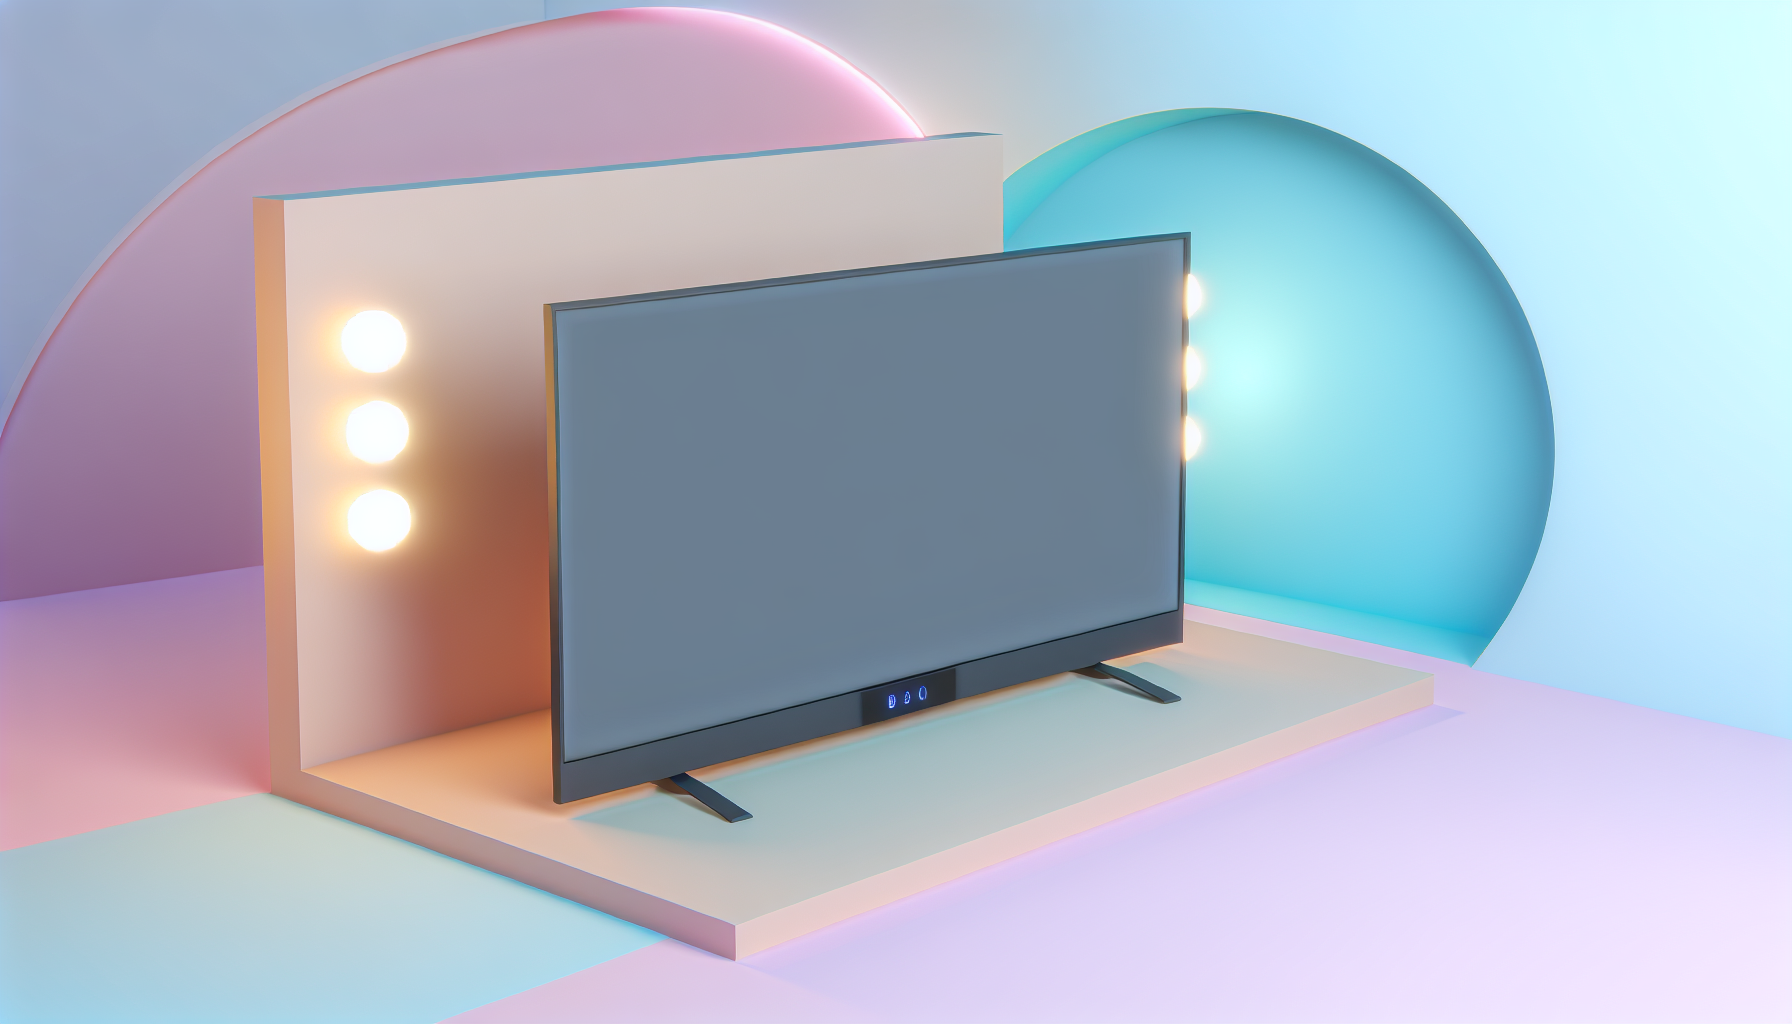                               Ambilight nachrüsten: So verwandelst du deinen Fernseher                             
                              